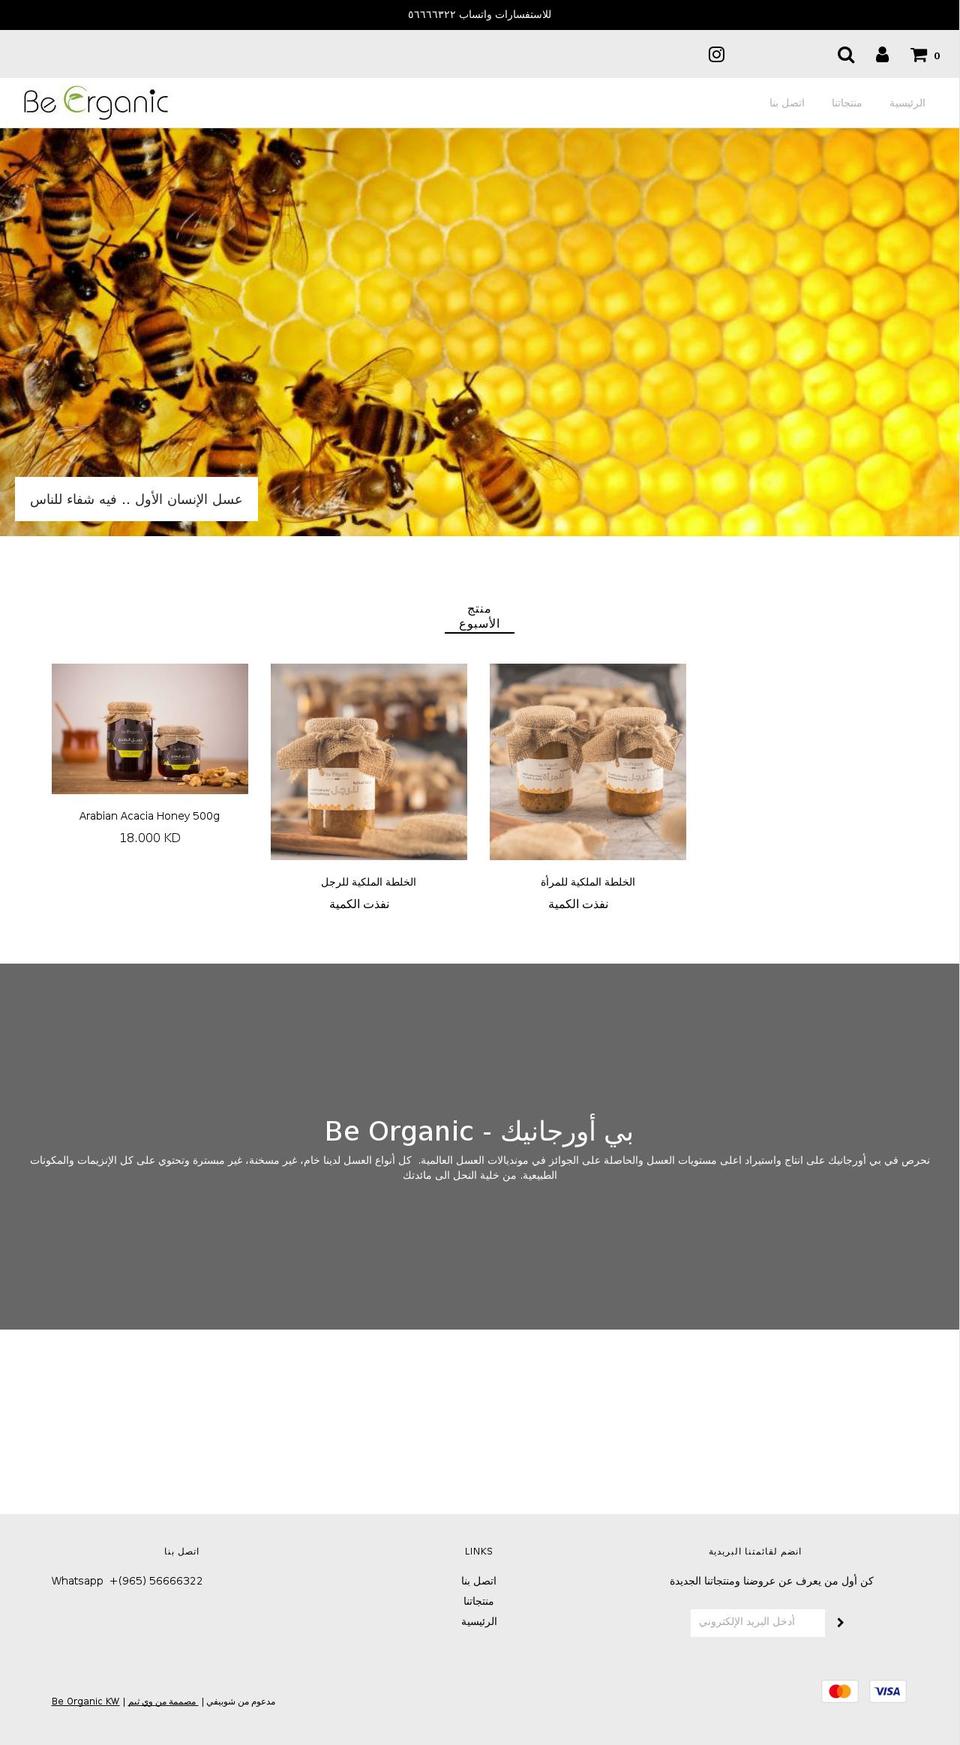 beorganickw.com shopify website screenshot